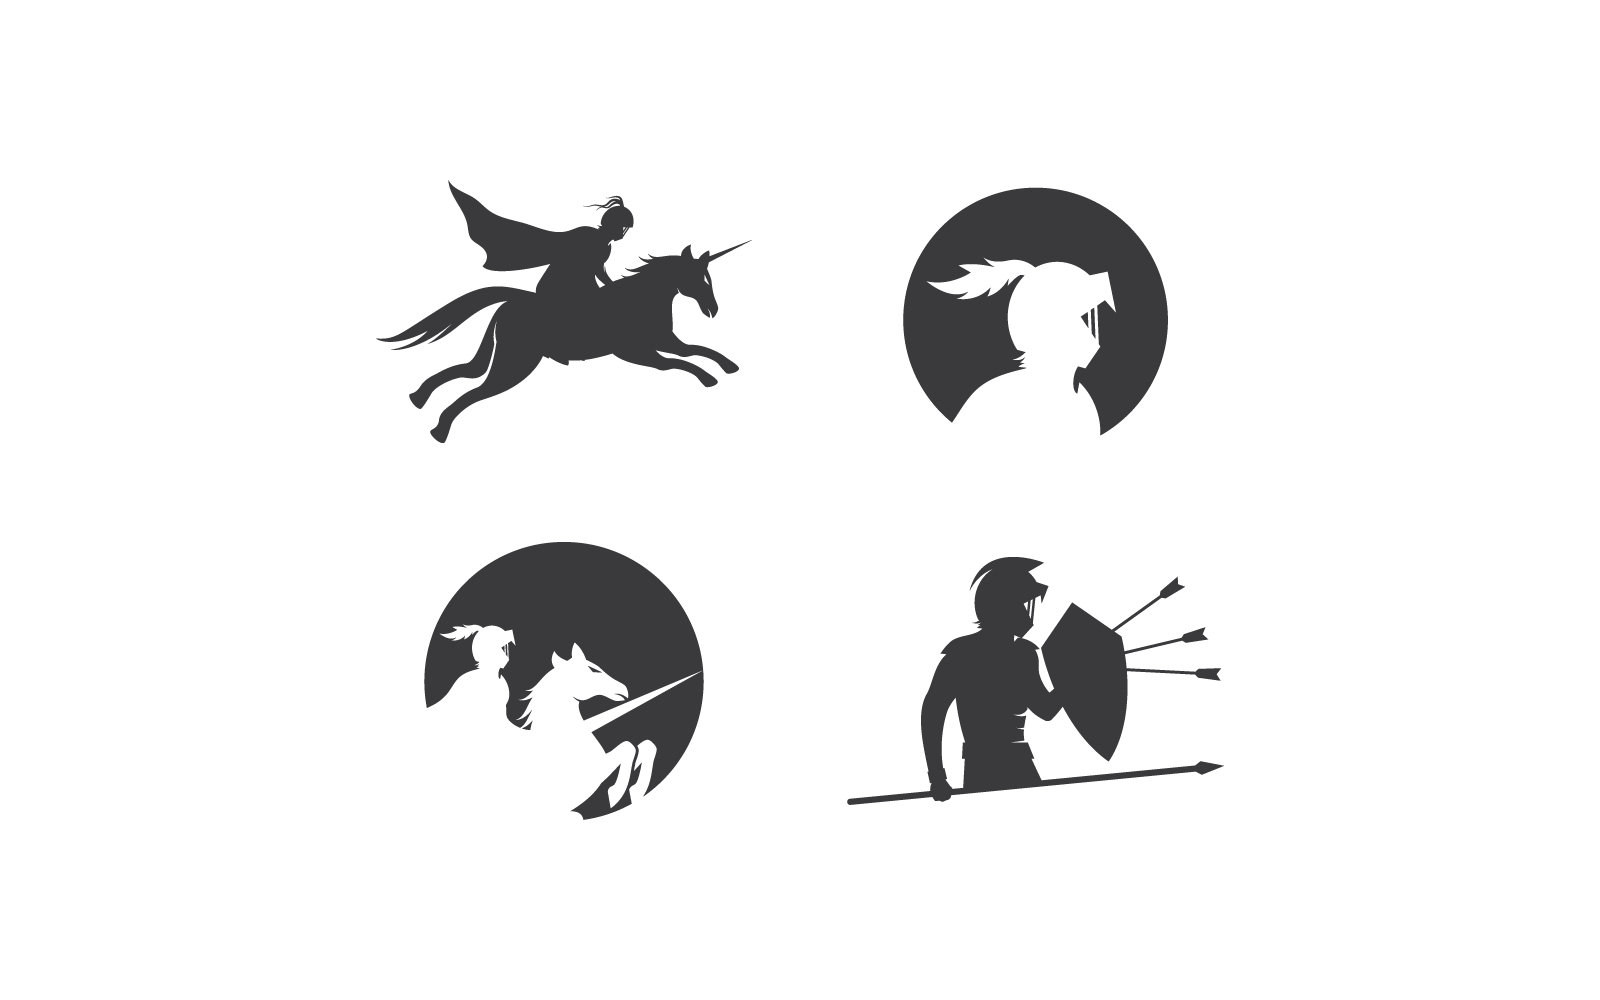 Horse knight hero logo vector illustration design